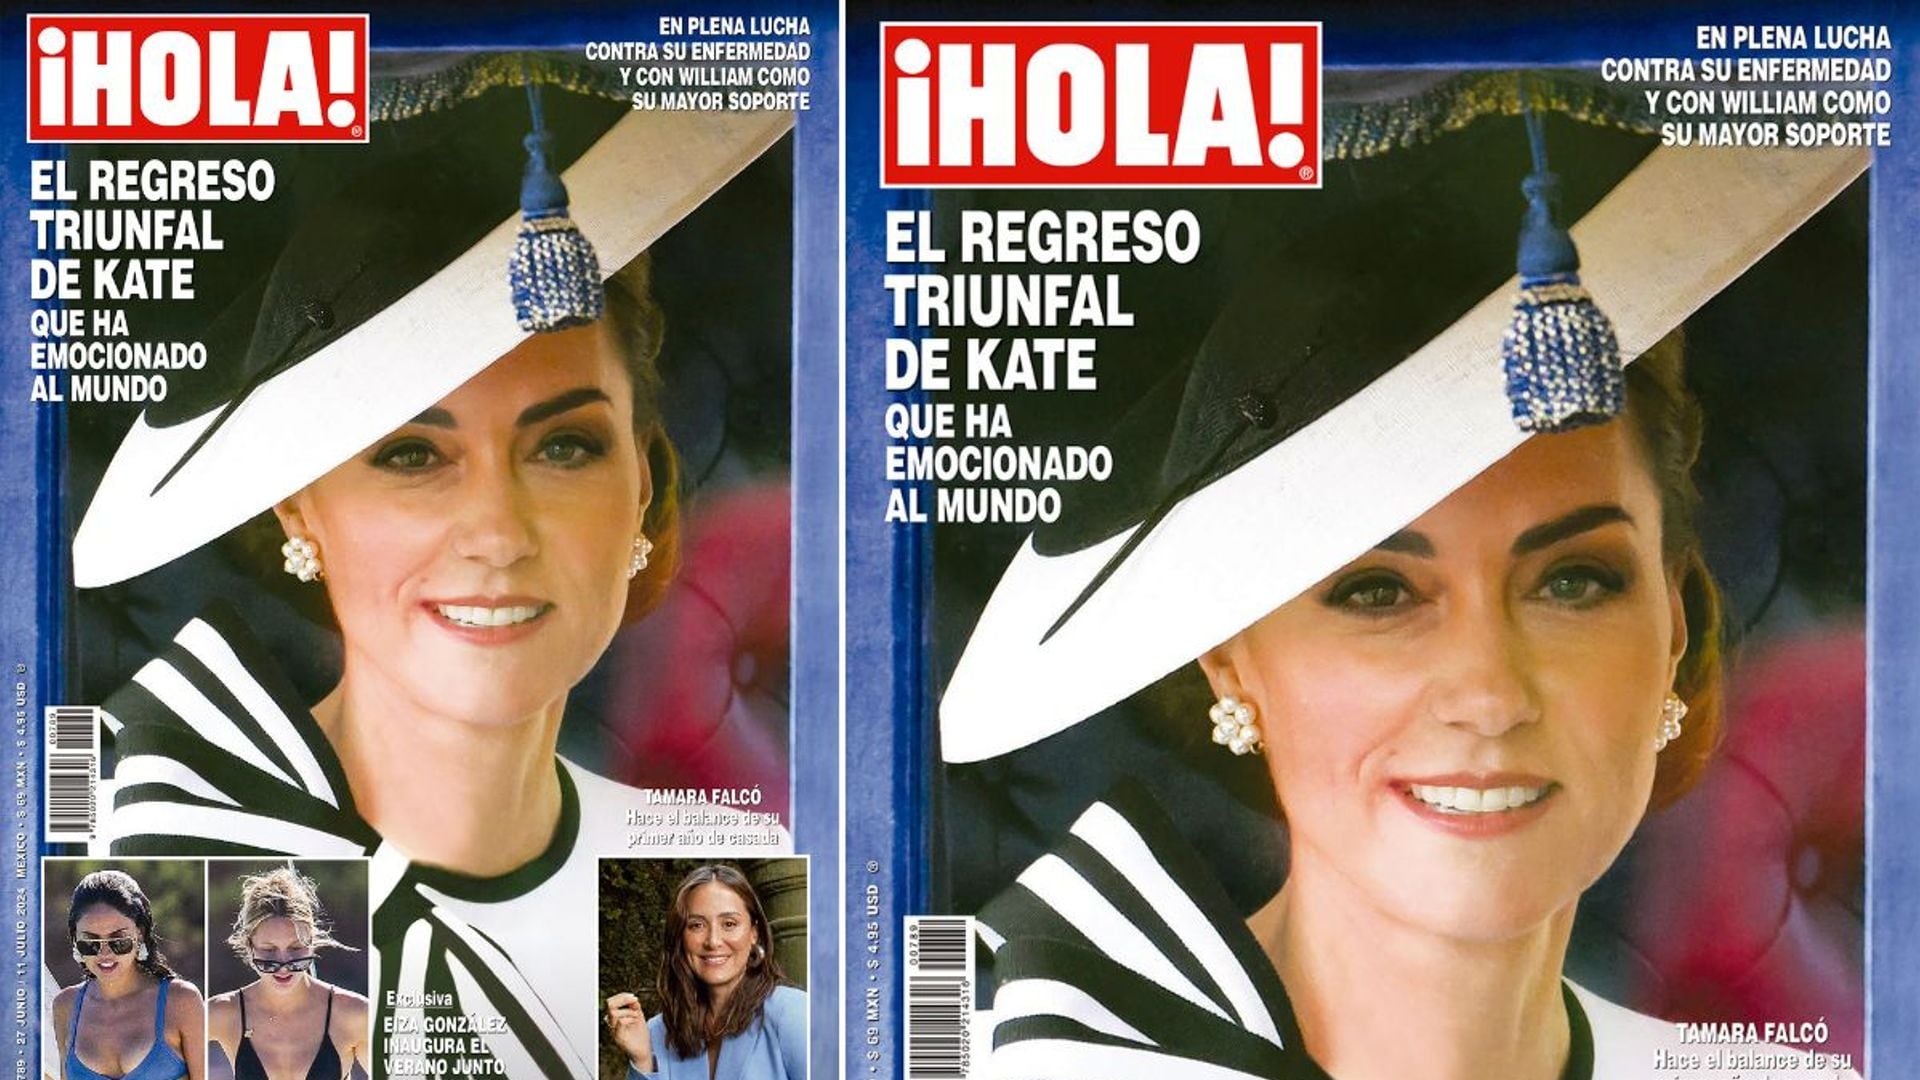 En ¡HOLA!, el regreso triunfal de Kate Middleton que ha emocionado al mundo